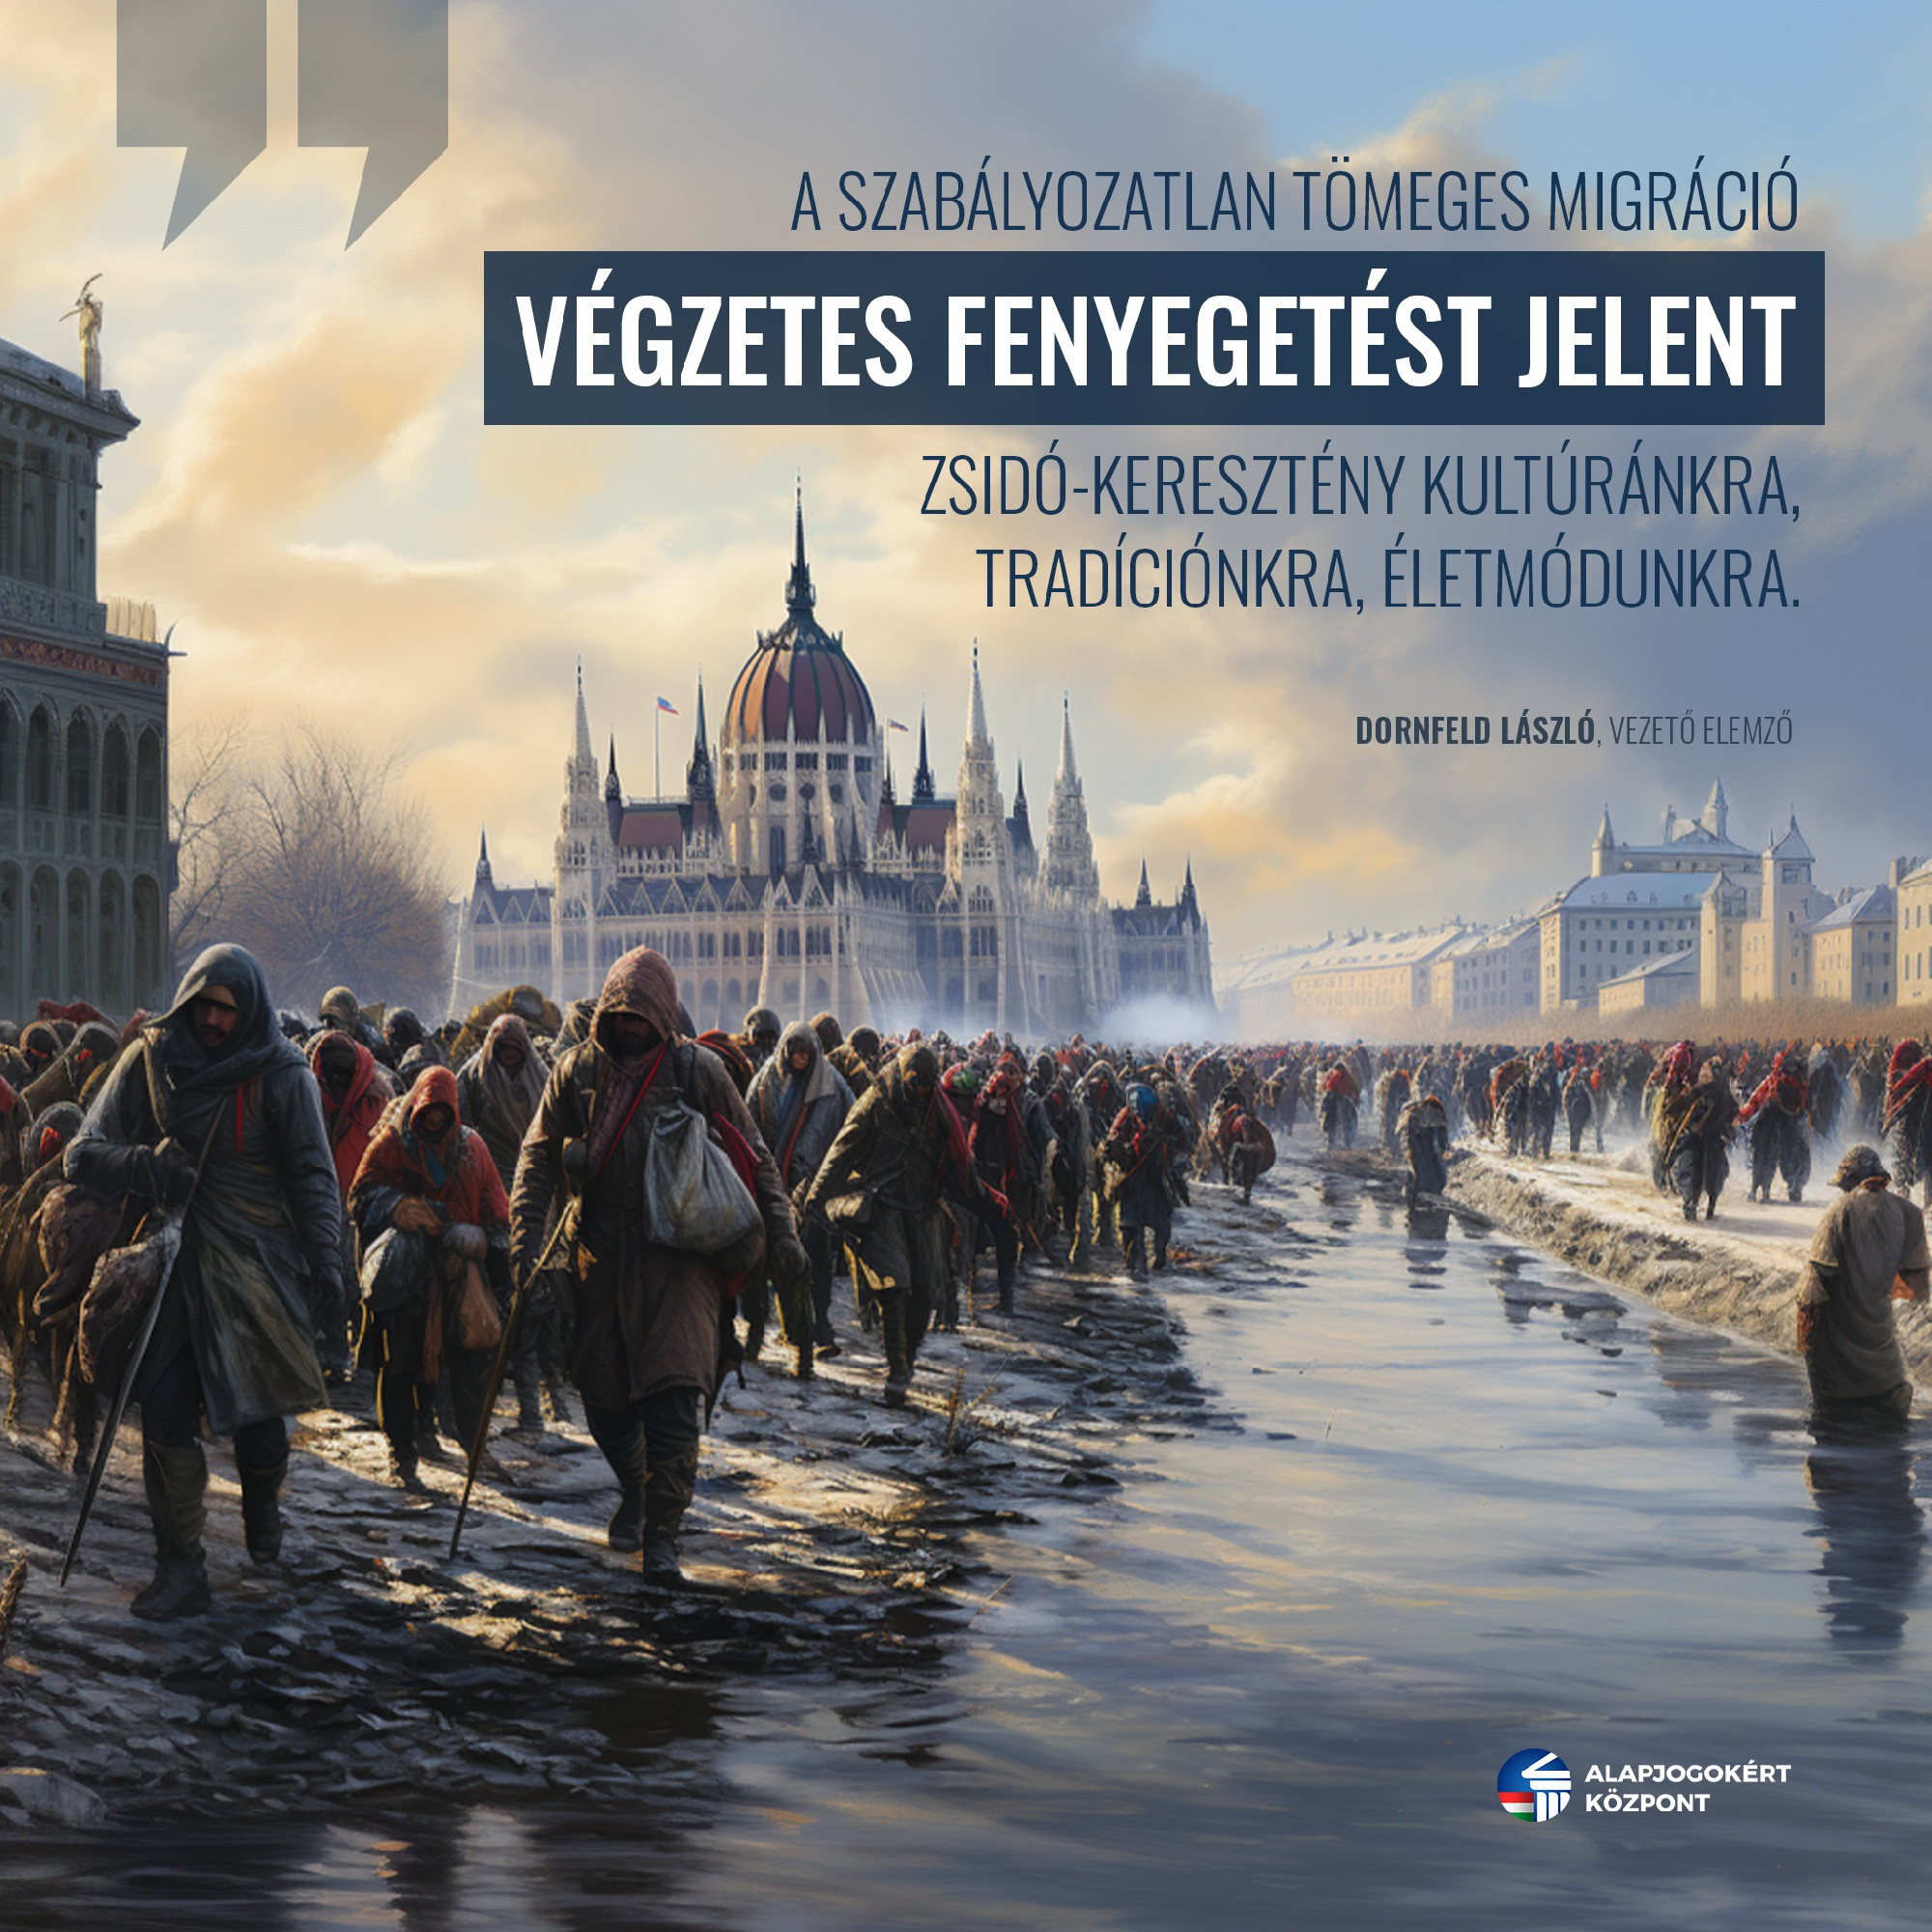 A magyar zászlót sem sikerült eltalálni az Alapjogokért Központ horrorplakátján